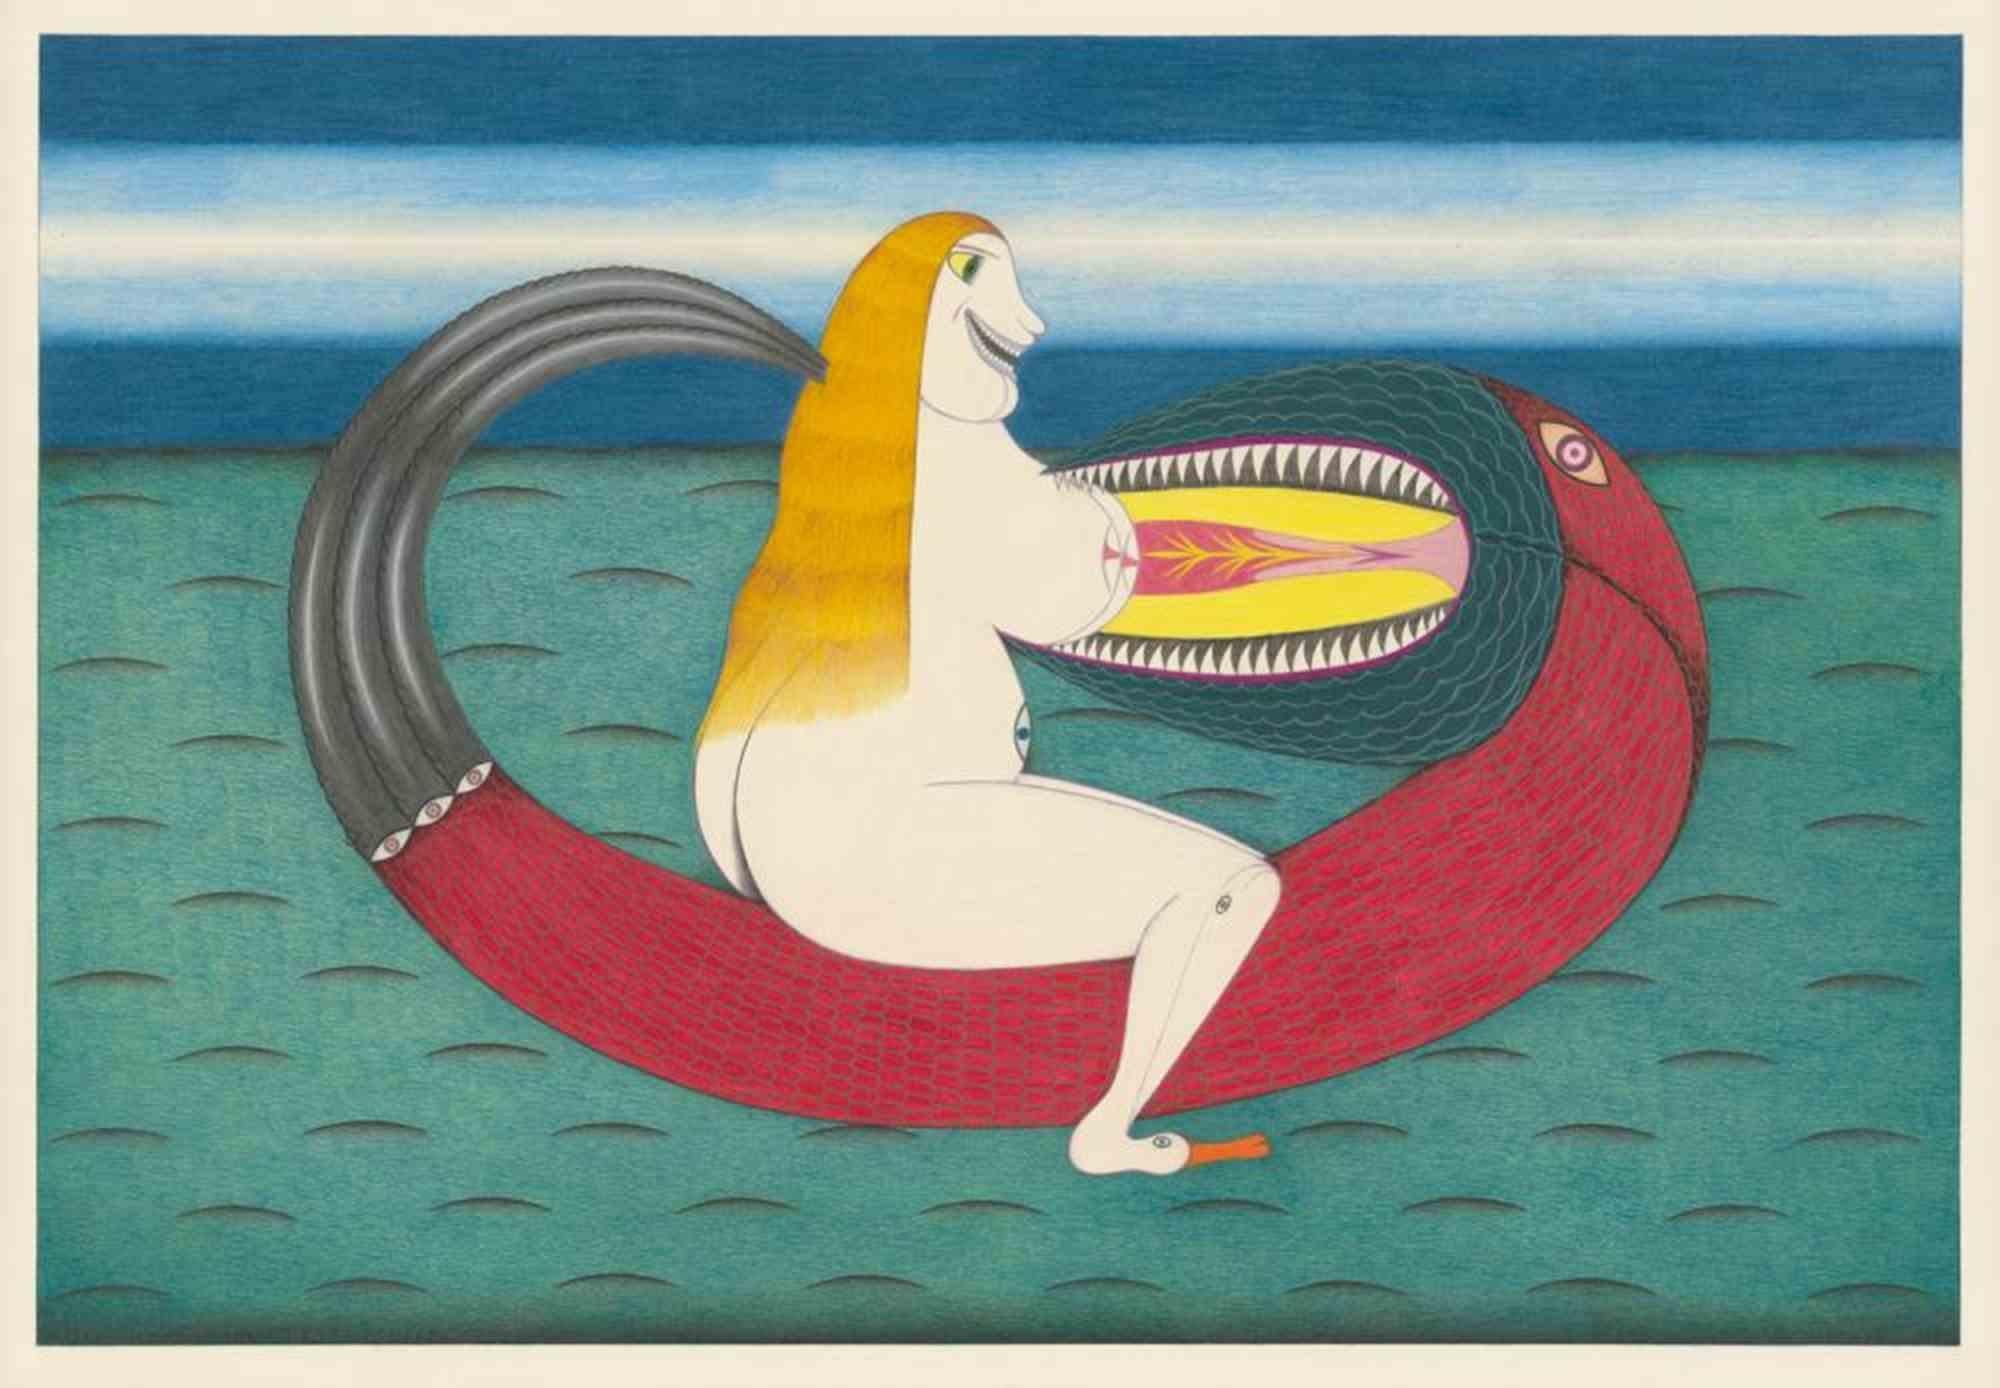 Die moralische Eifersucht ist ein zeitgenössisches Kunstwerk von Friedrich Schröder Sonnenstern aus dem Jahr 1964.

Bleistift und farbige Kreiden auf Schoellershammer-Karton.

Rechts unten mit Bleistift signiert "F. S. SONNENSTERN" mit Bleistift